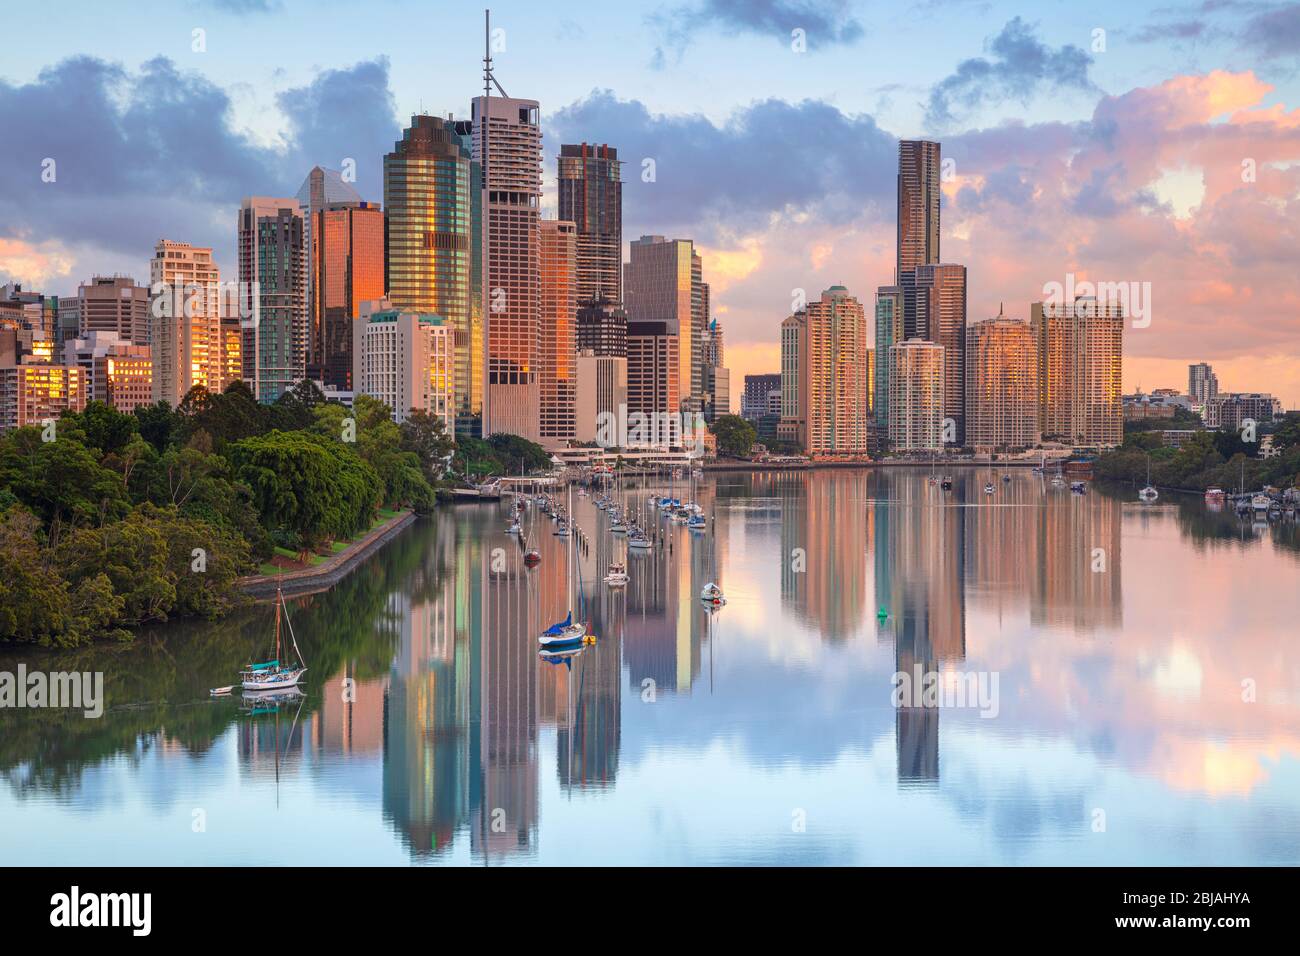 Brisbane. Cityscape image of Brisbane skyline during sunrise in Australia. Stock Photo